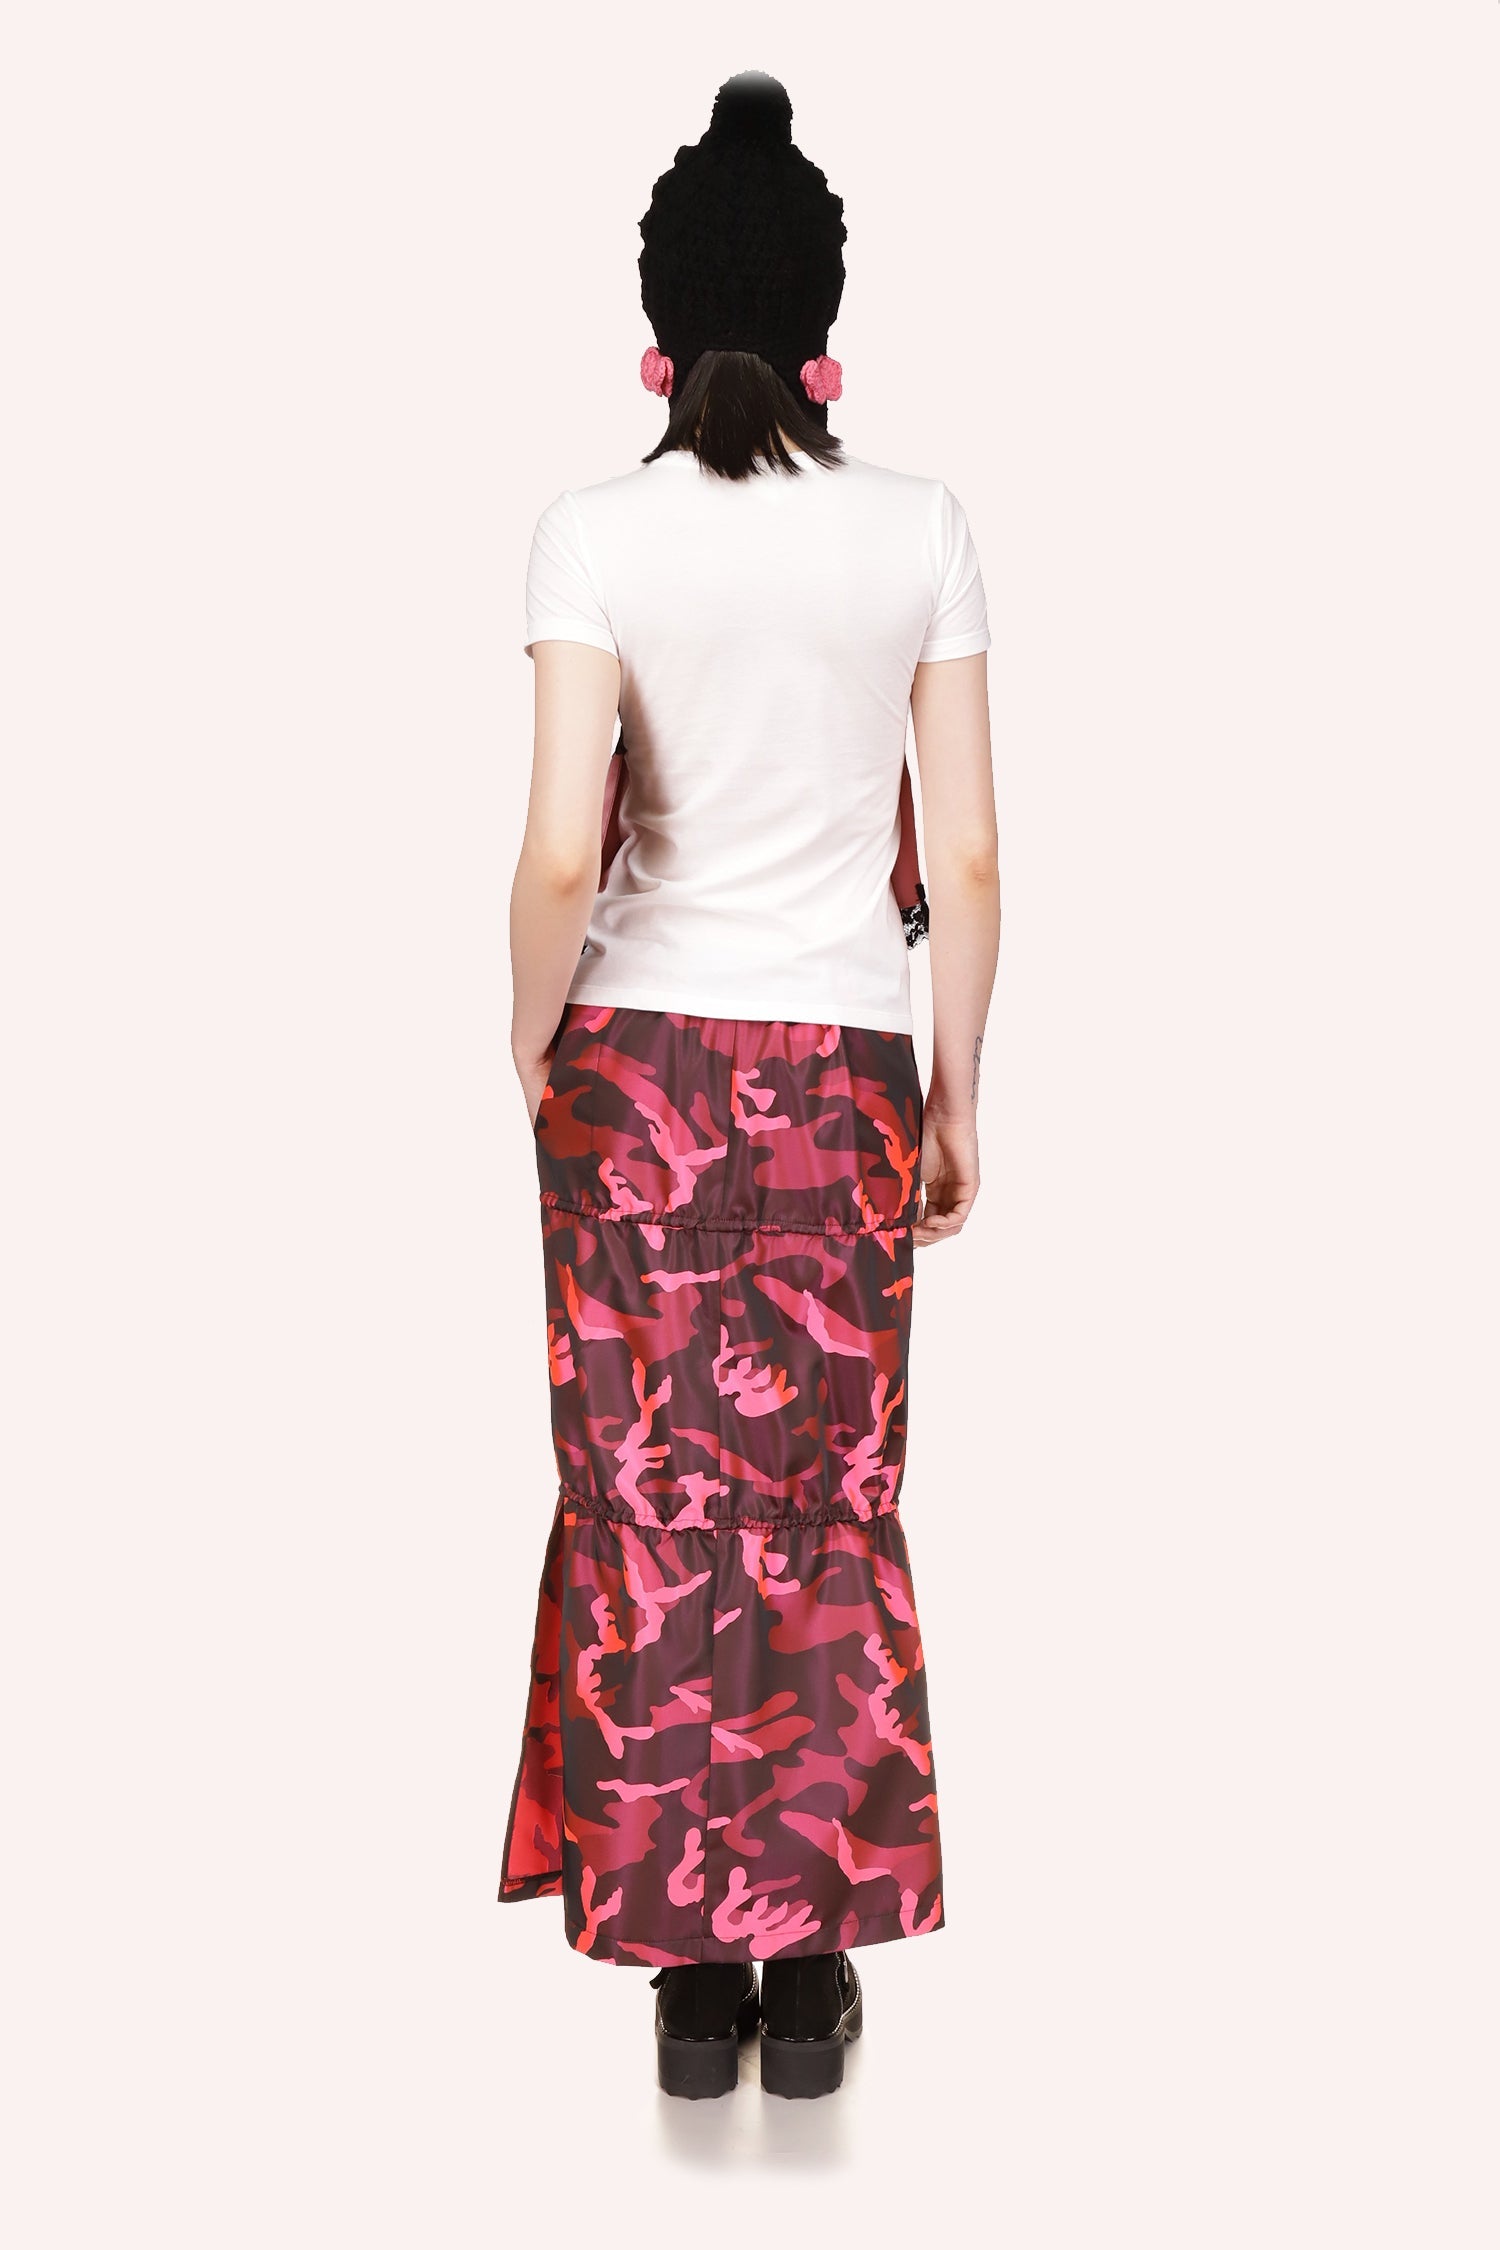 La Lingerie Deco Tee Rose di Anna Sui è senza maniche e senza schienale.